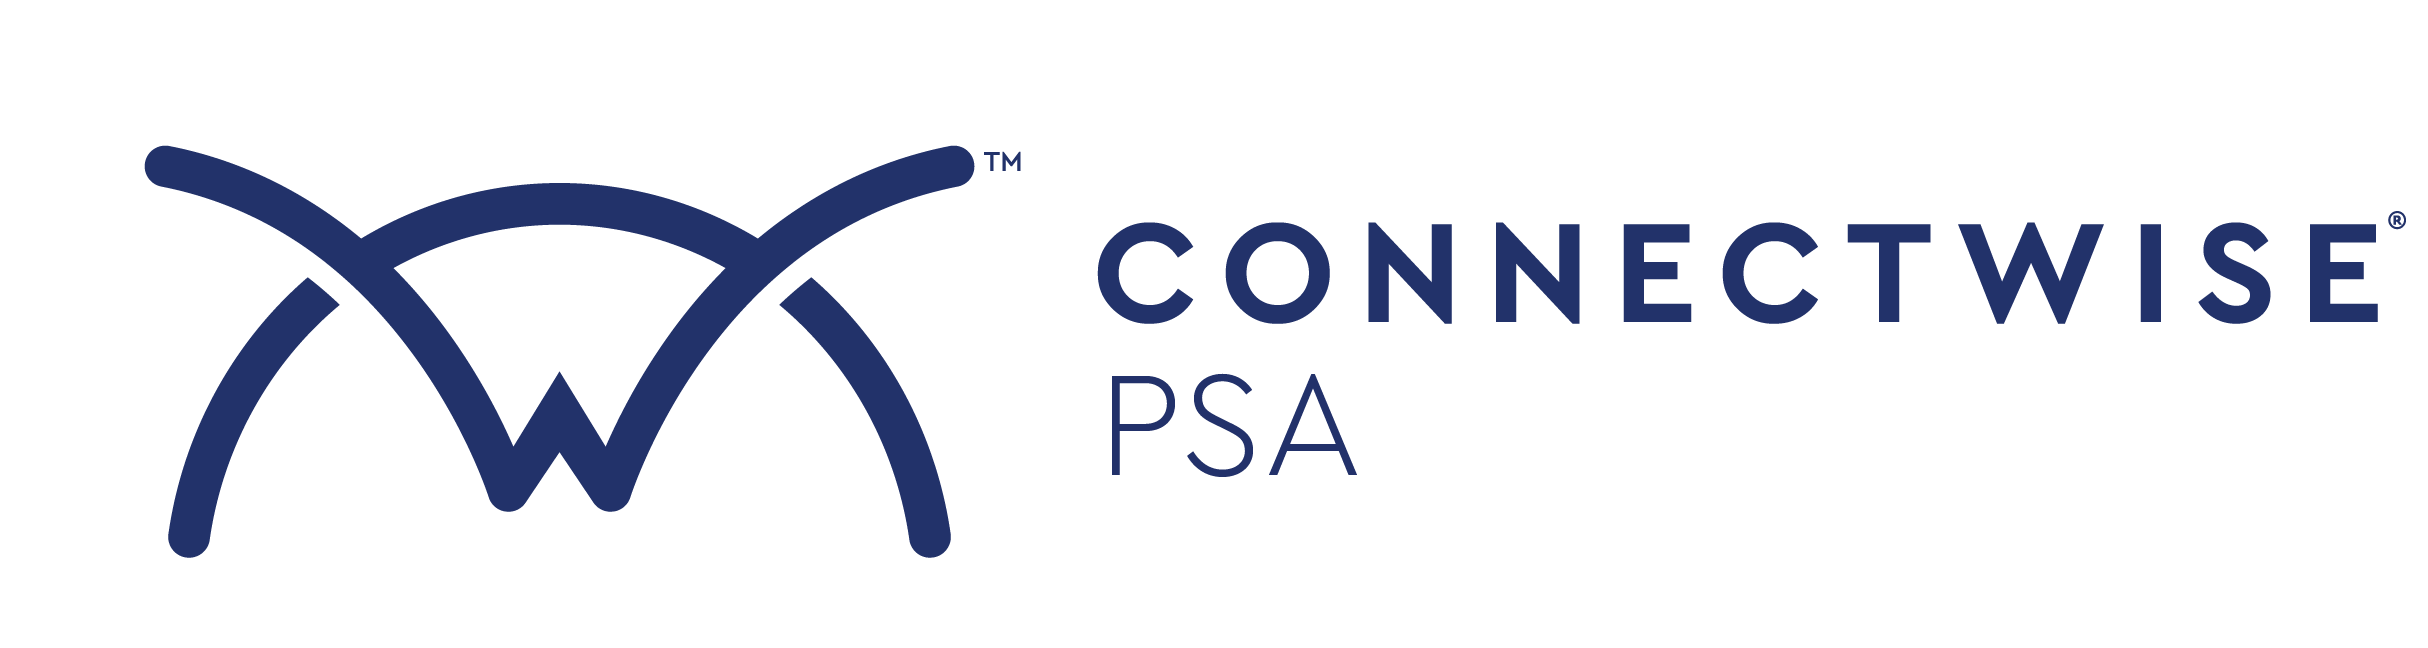 CW Manage PSA Logo